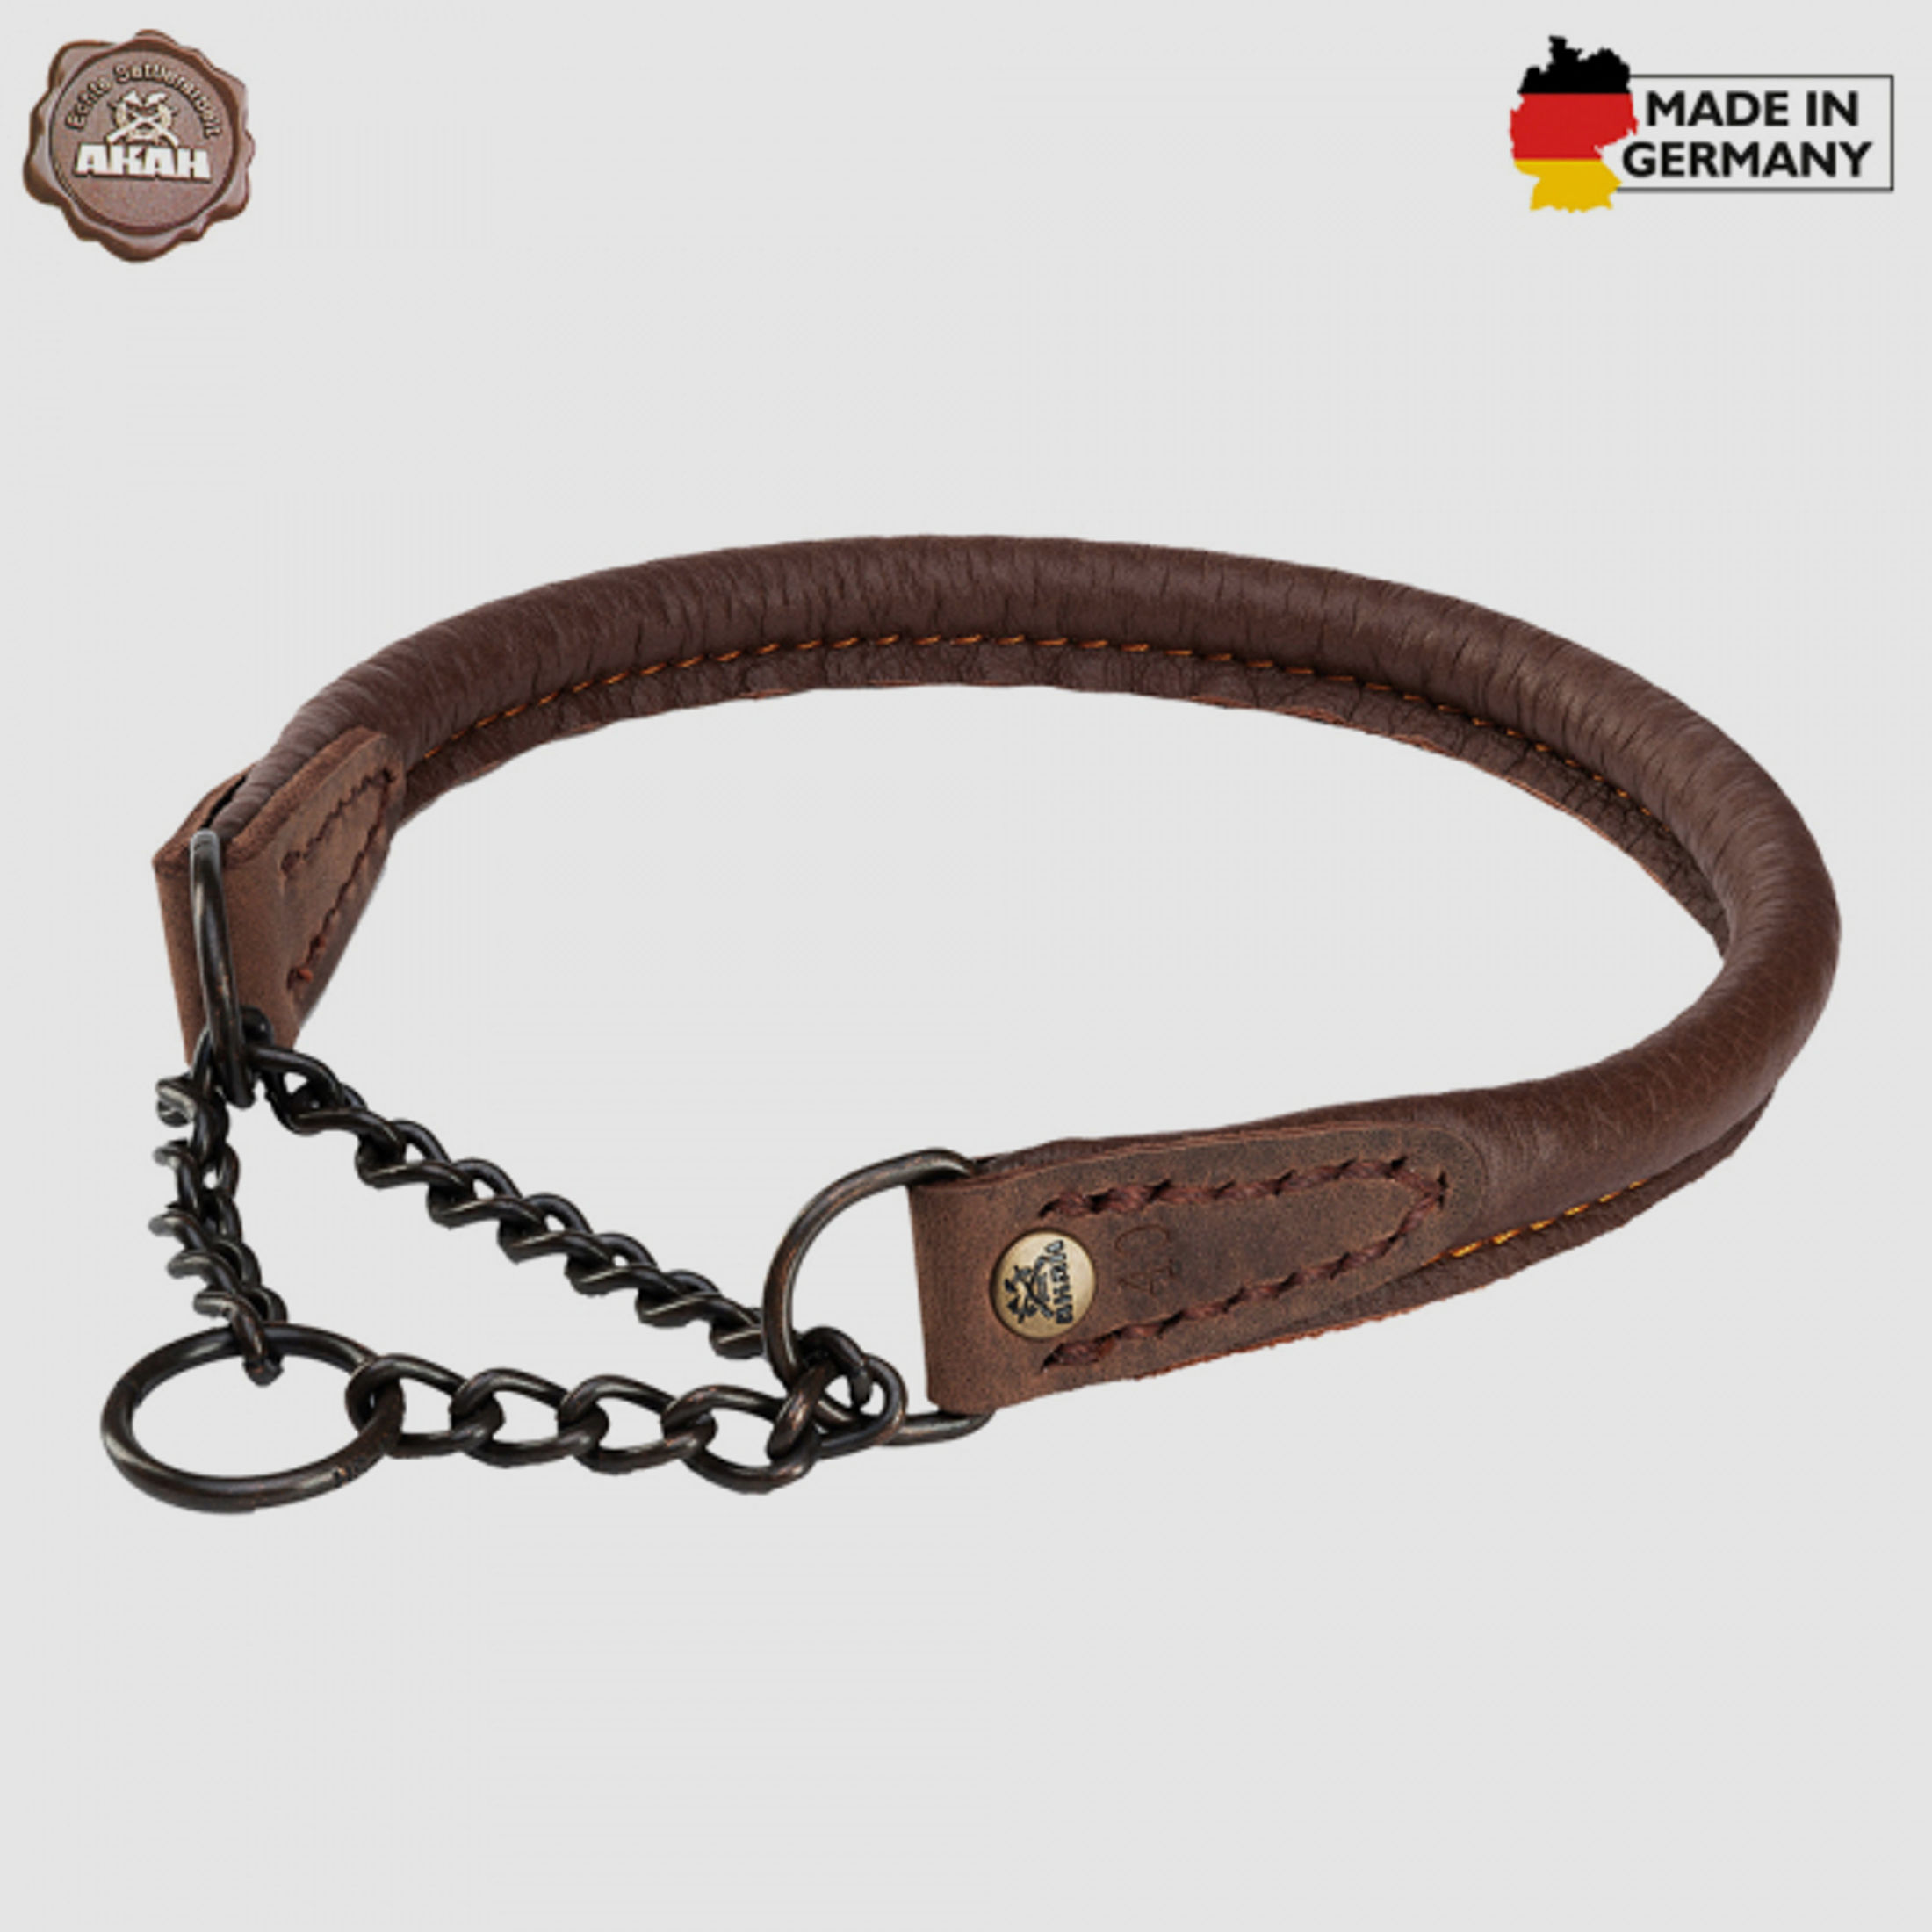 HALSUNG aus ELCHLEDER - rundgenäht, mit Durchzugskette Handgenäht in GERMANY Halsumfang Größe: 45cm